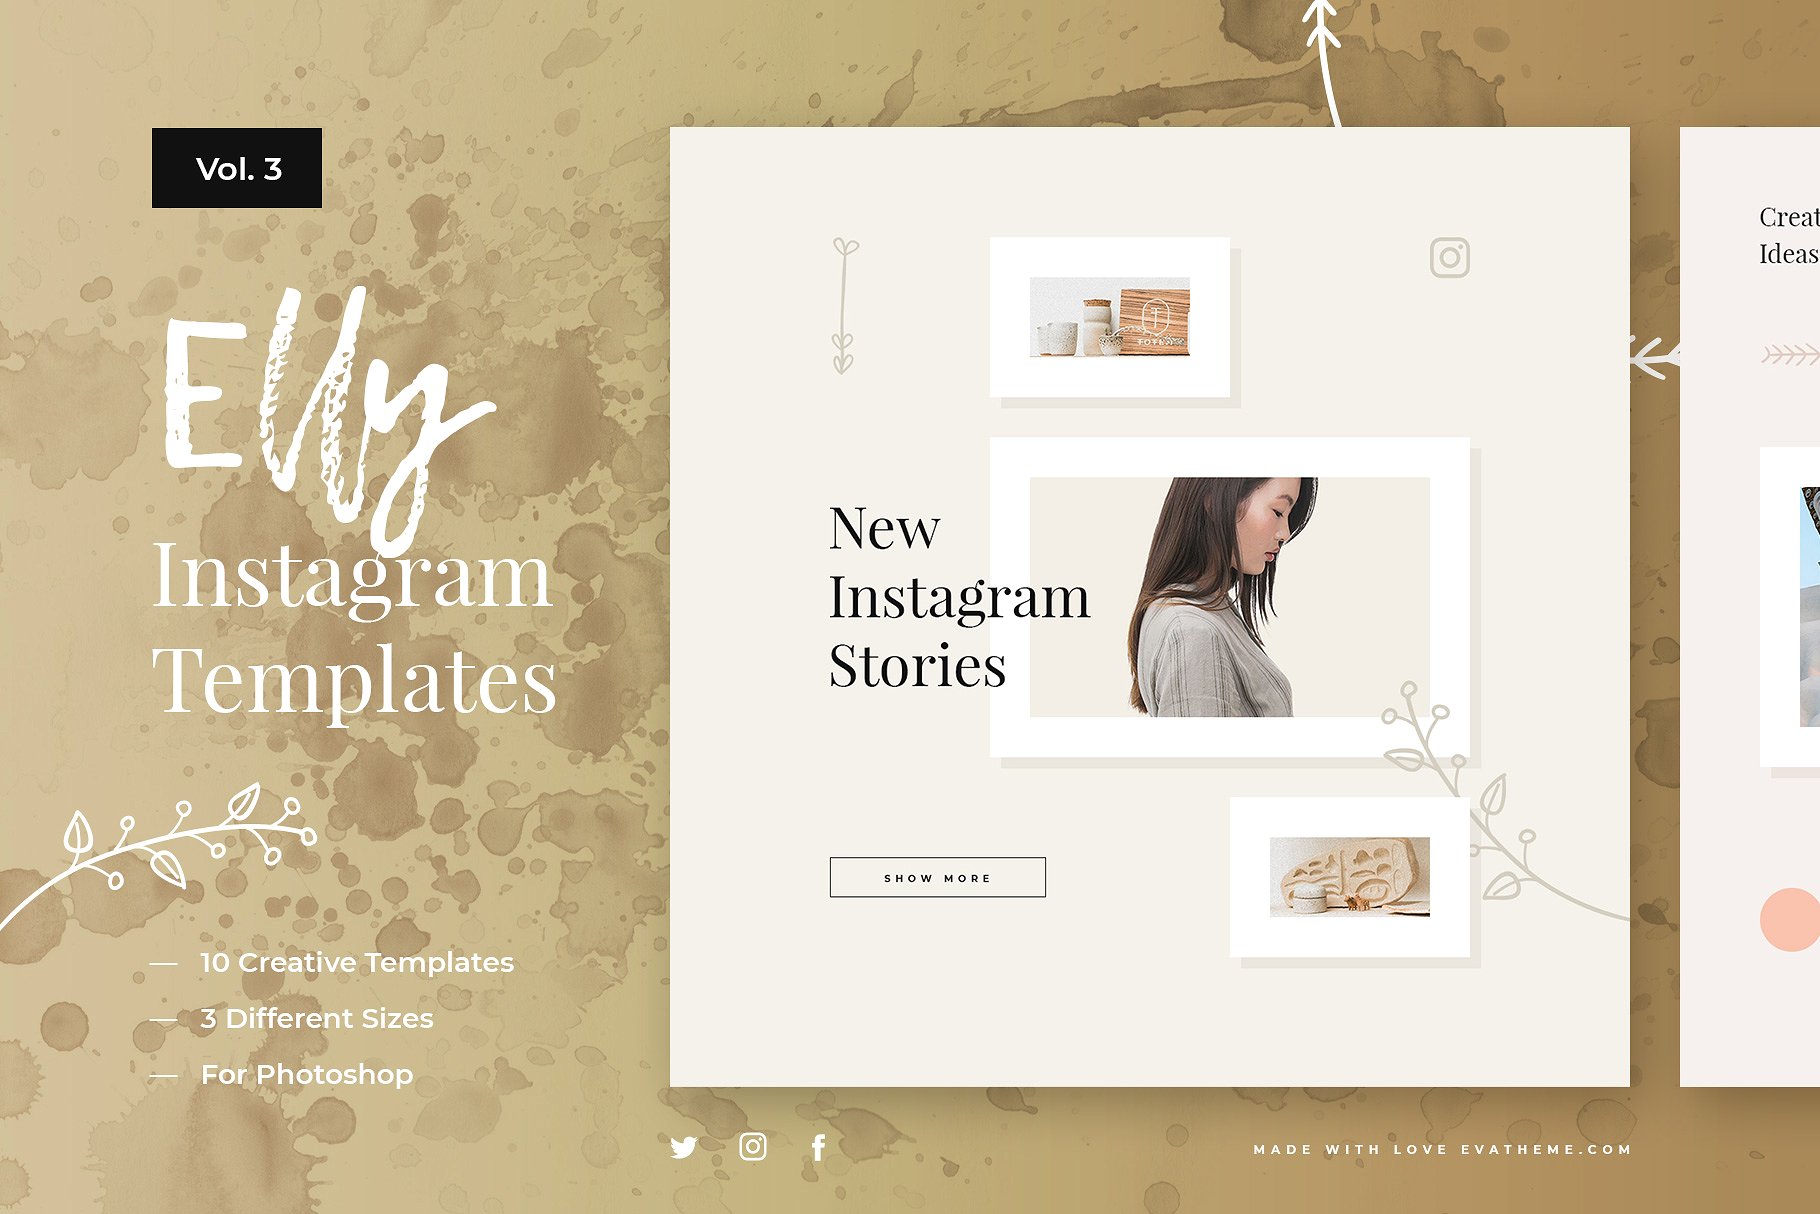 创意社交媒体贴图模板第一素材精选合集 Elly Instagram Template Bundle插图(3)